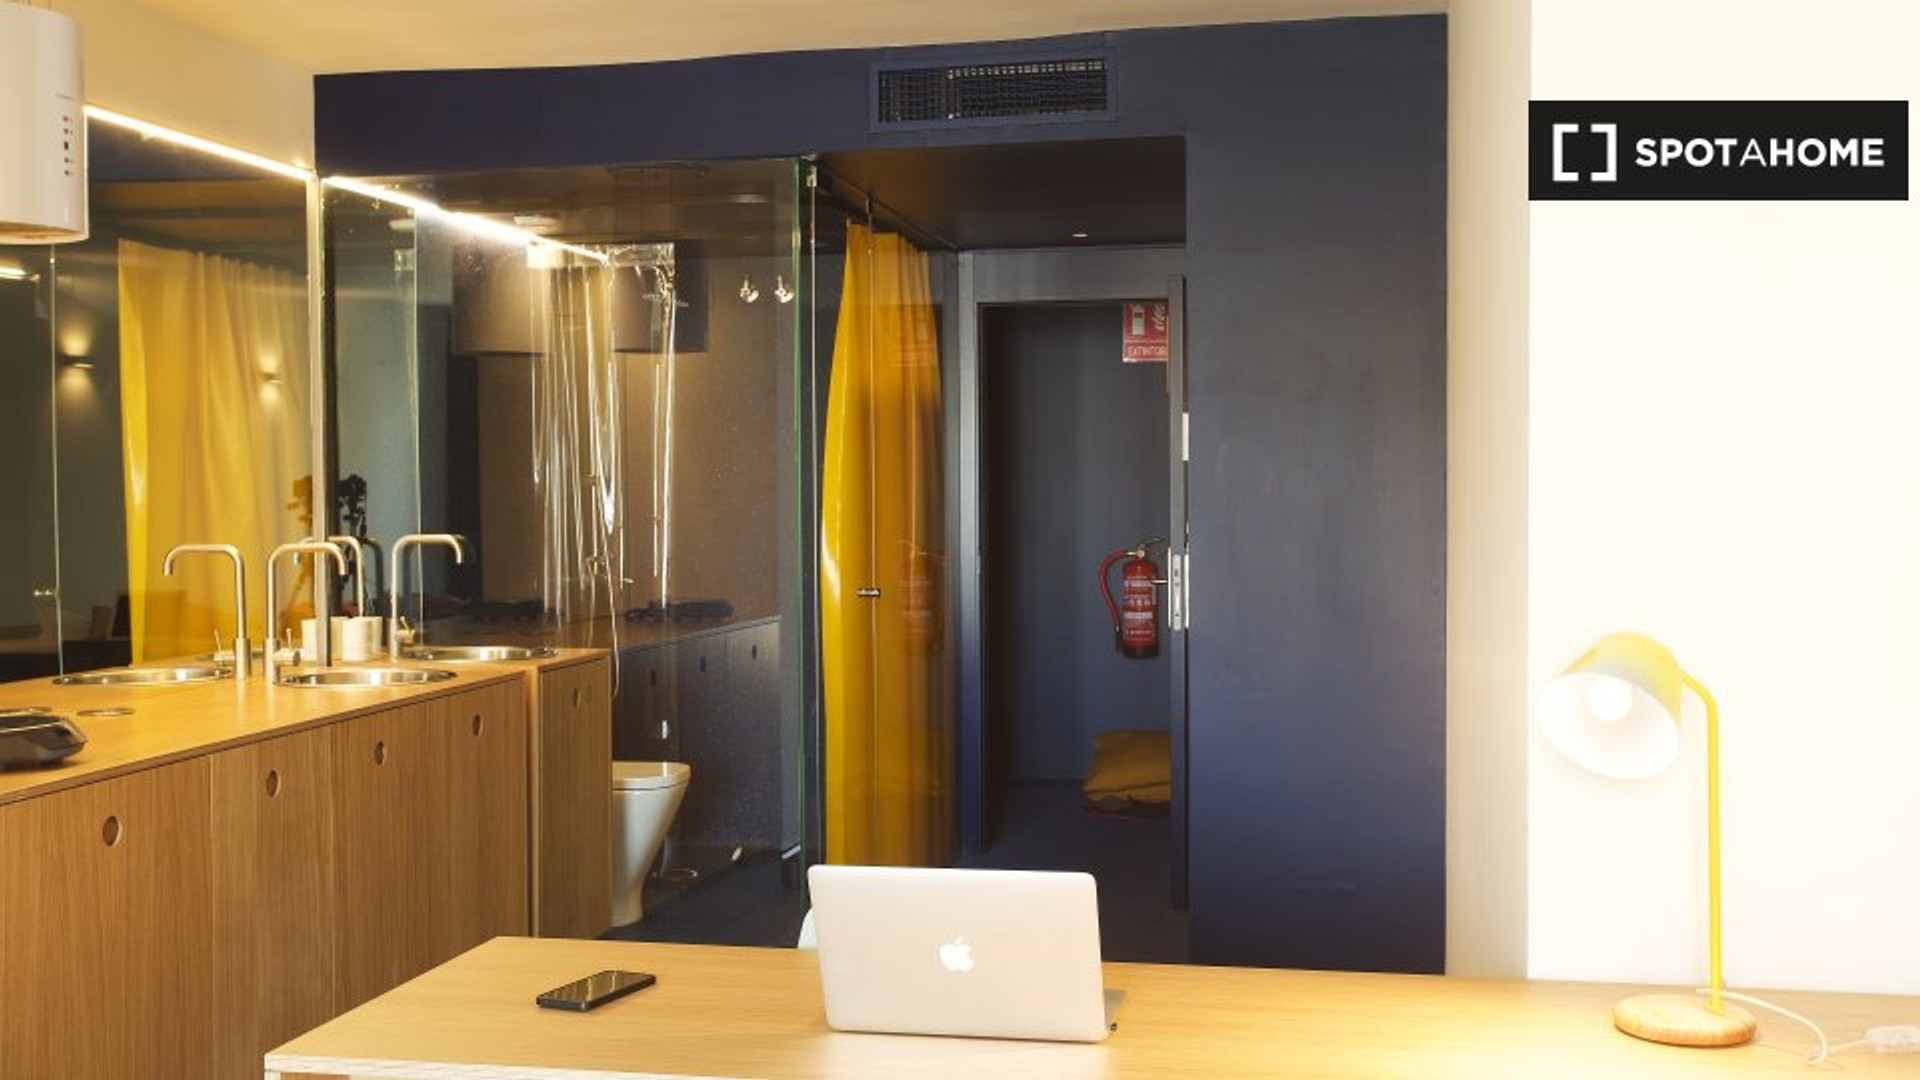 Very bright studio for rent in Alicante